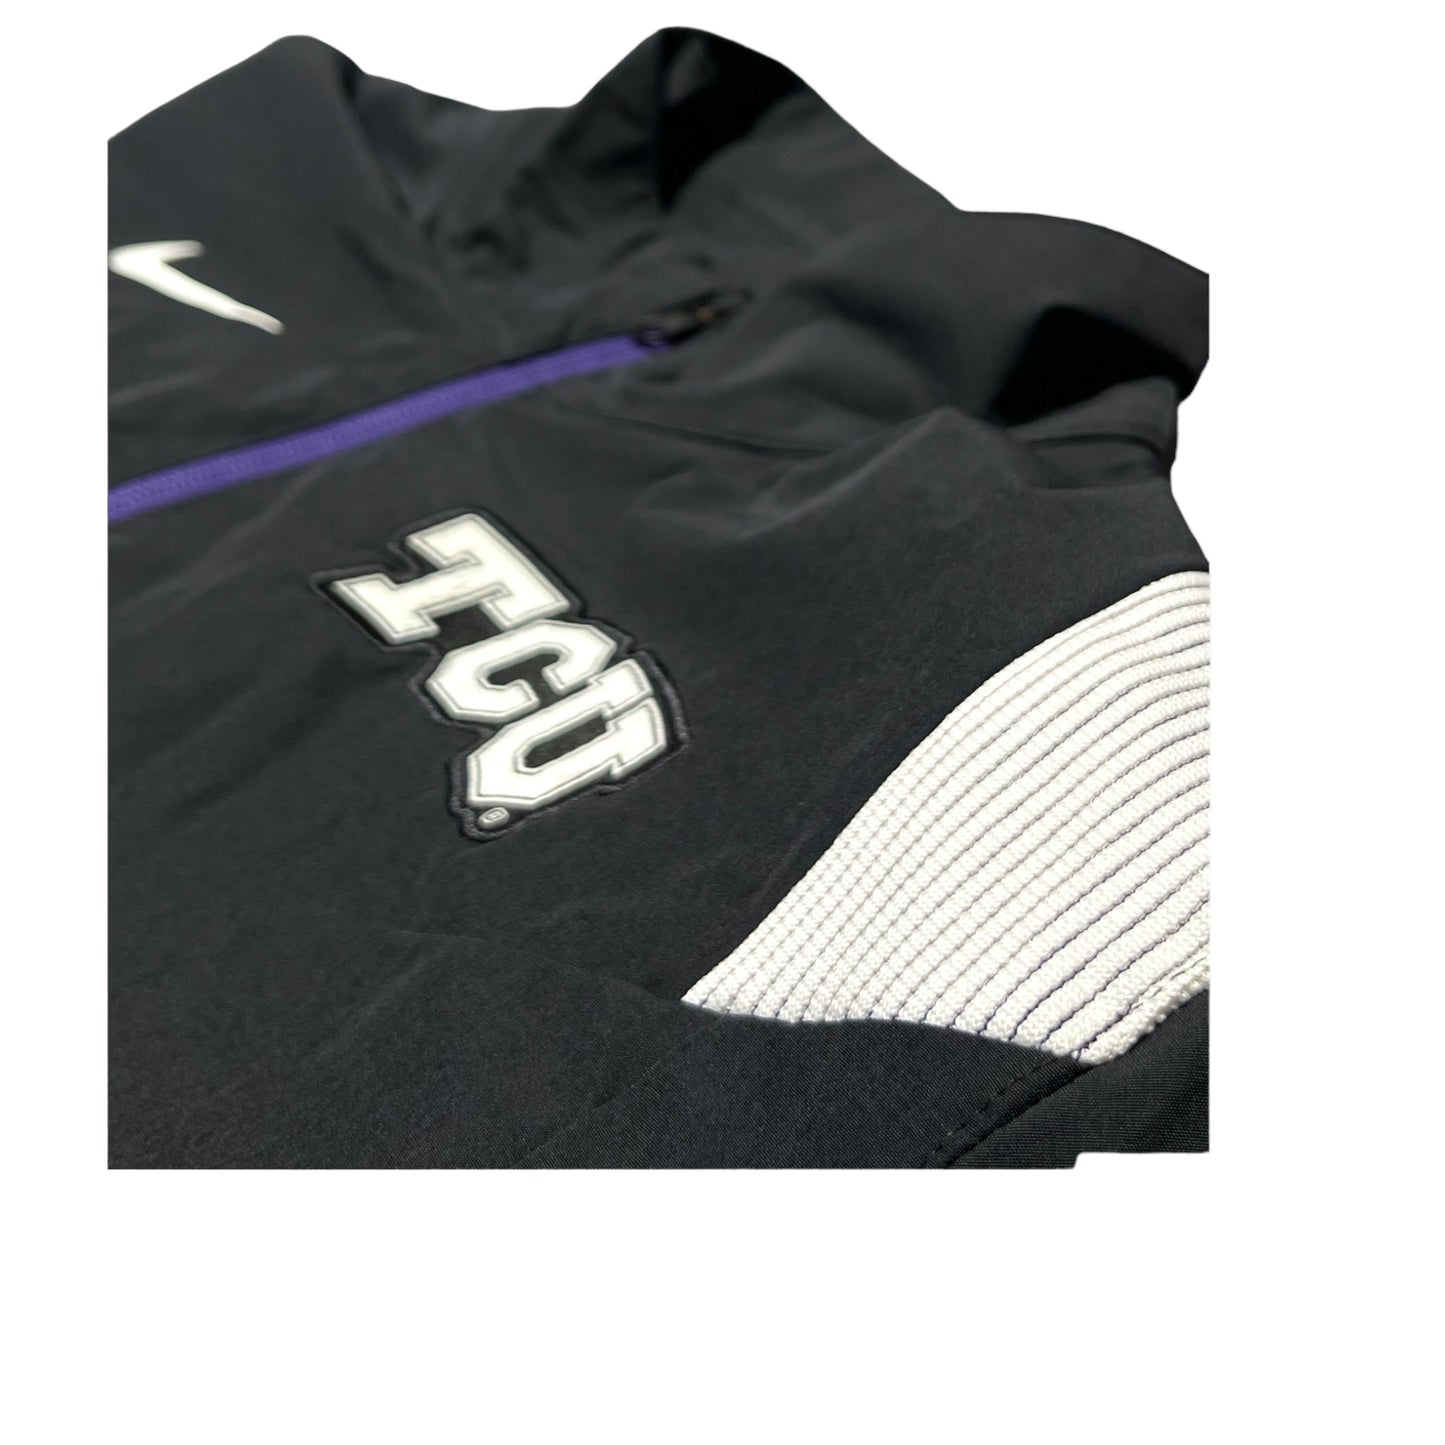 2022 TCU Team Issue Premium On Field Nike Jacket